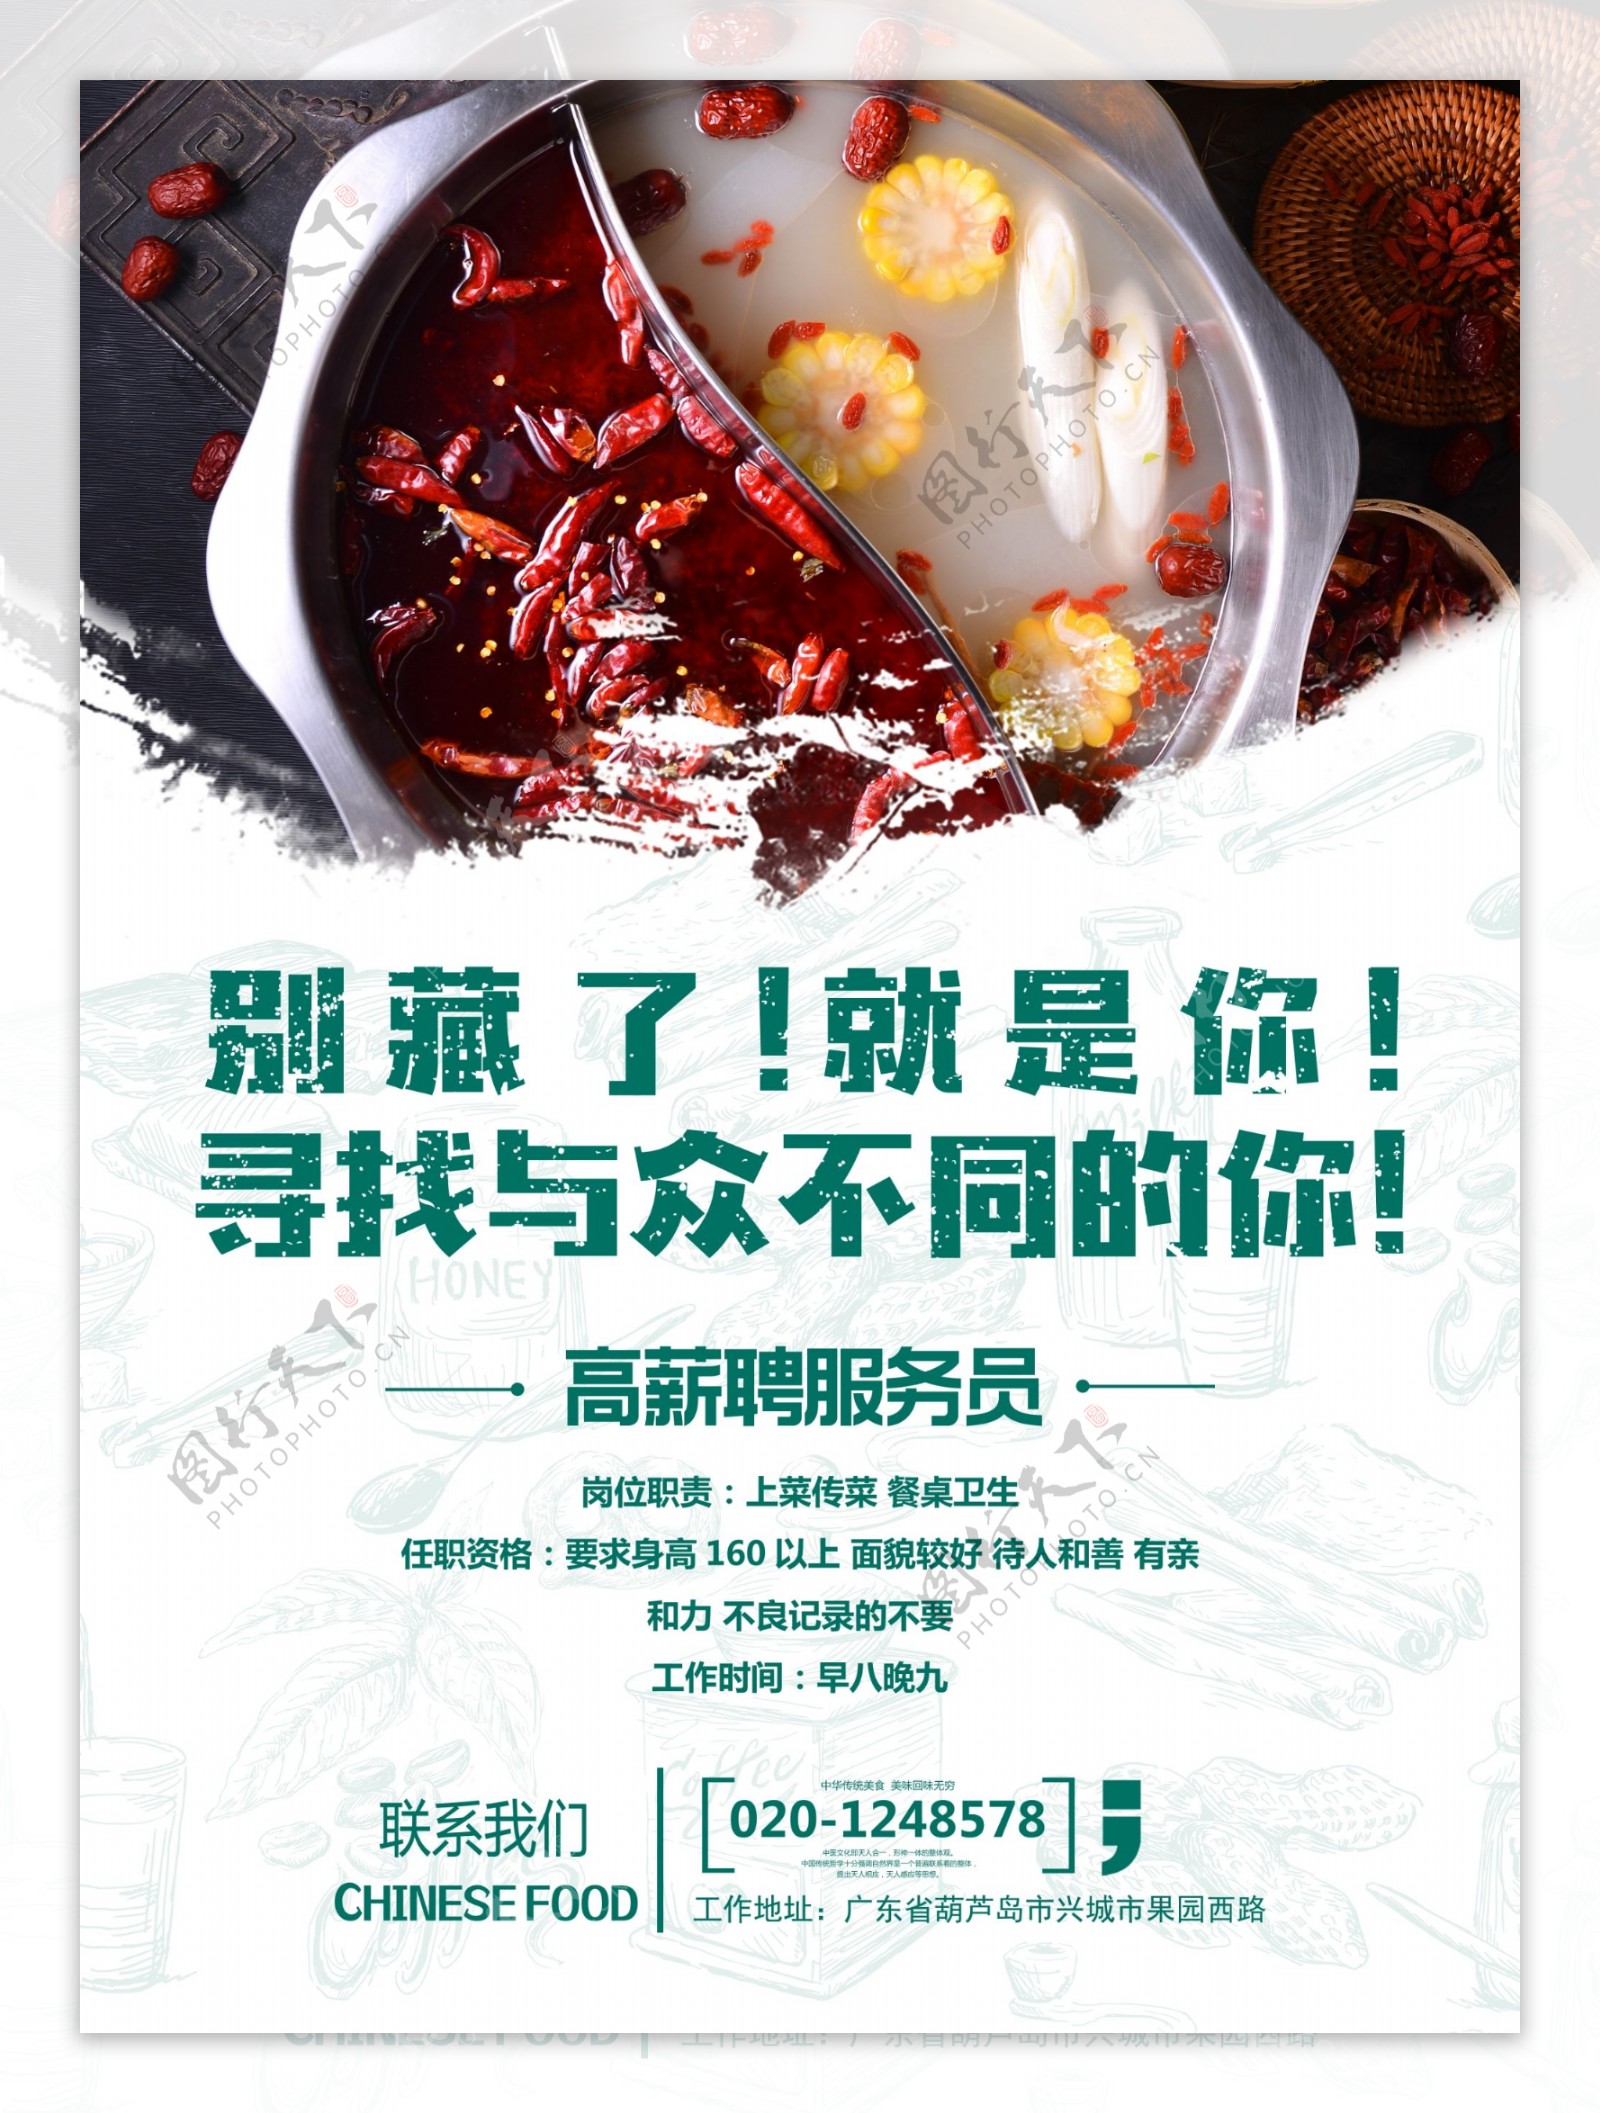 中国风火锅店餐饮美食招聘海报创